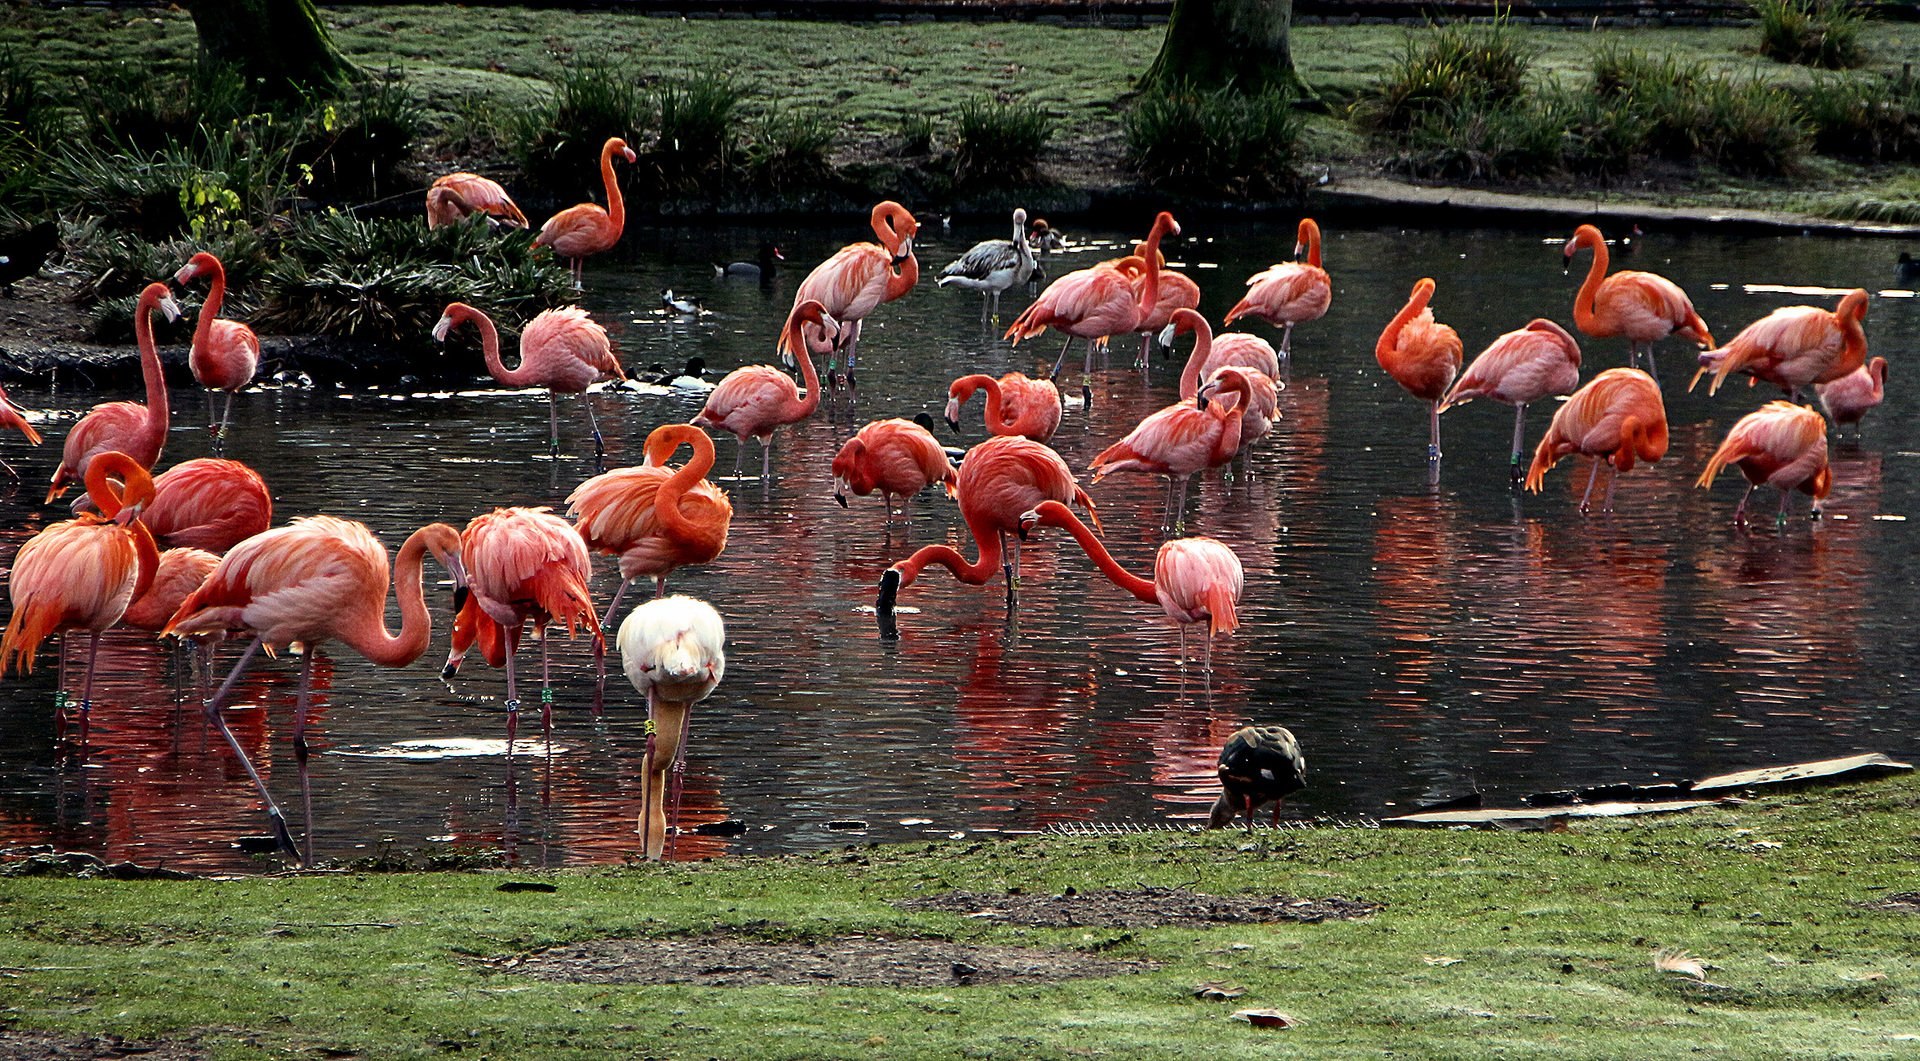 фламинго в московском зоопарке